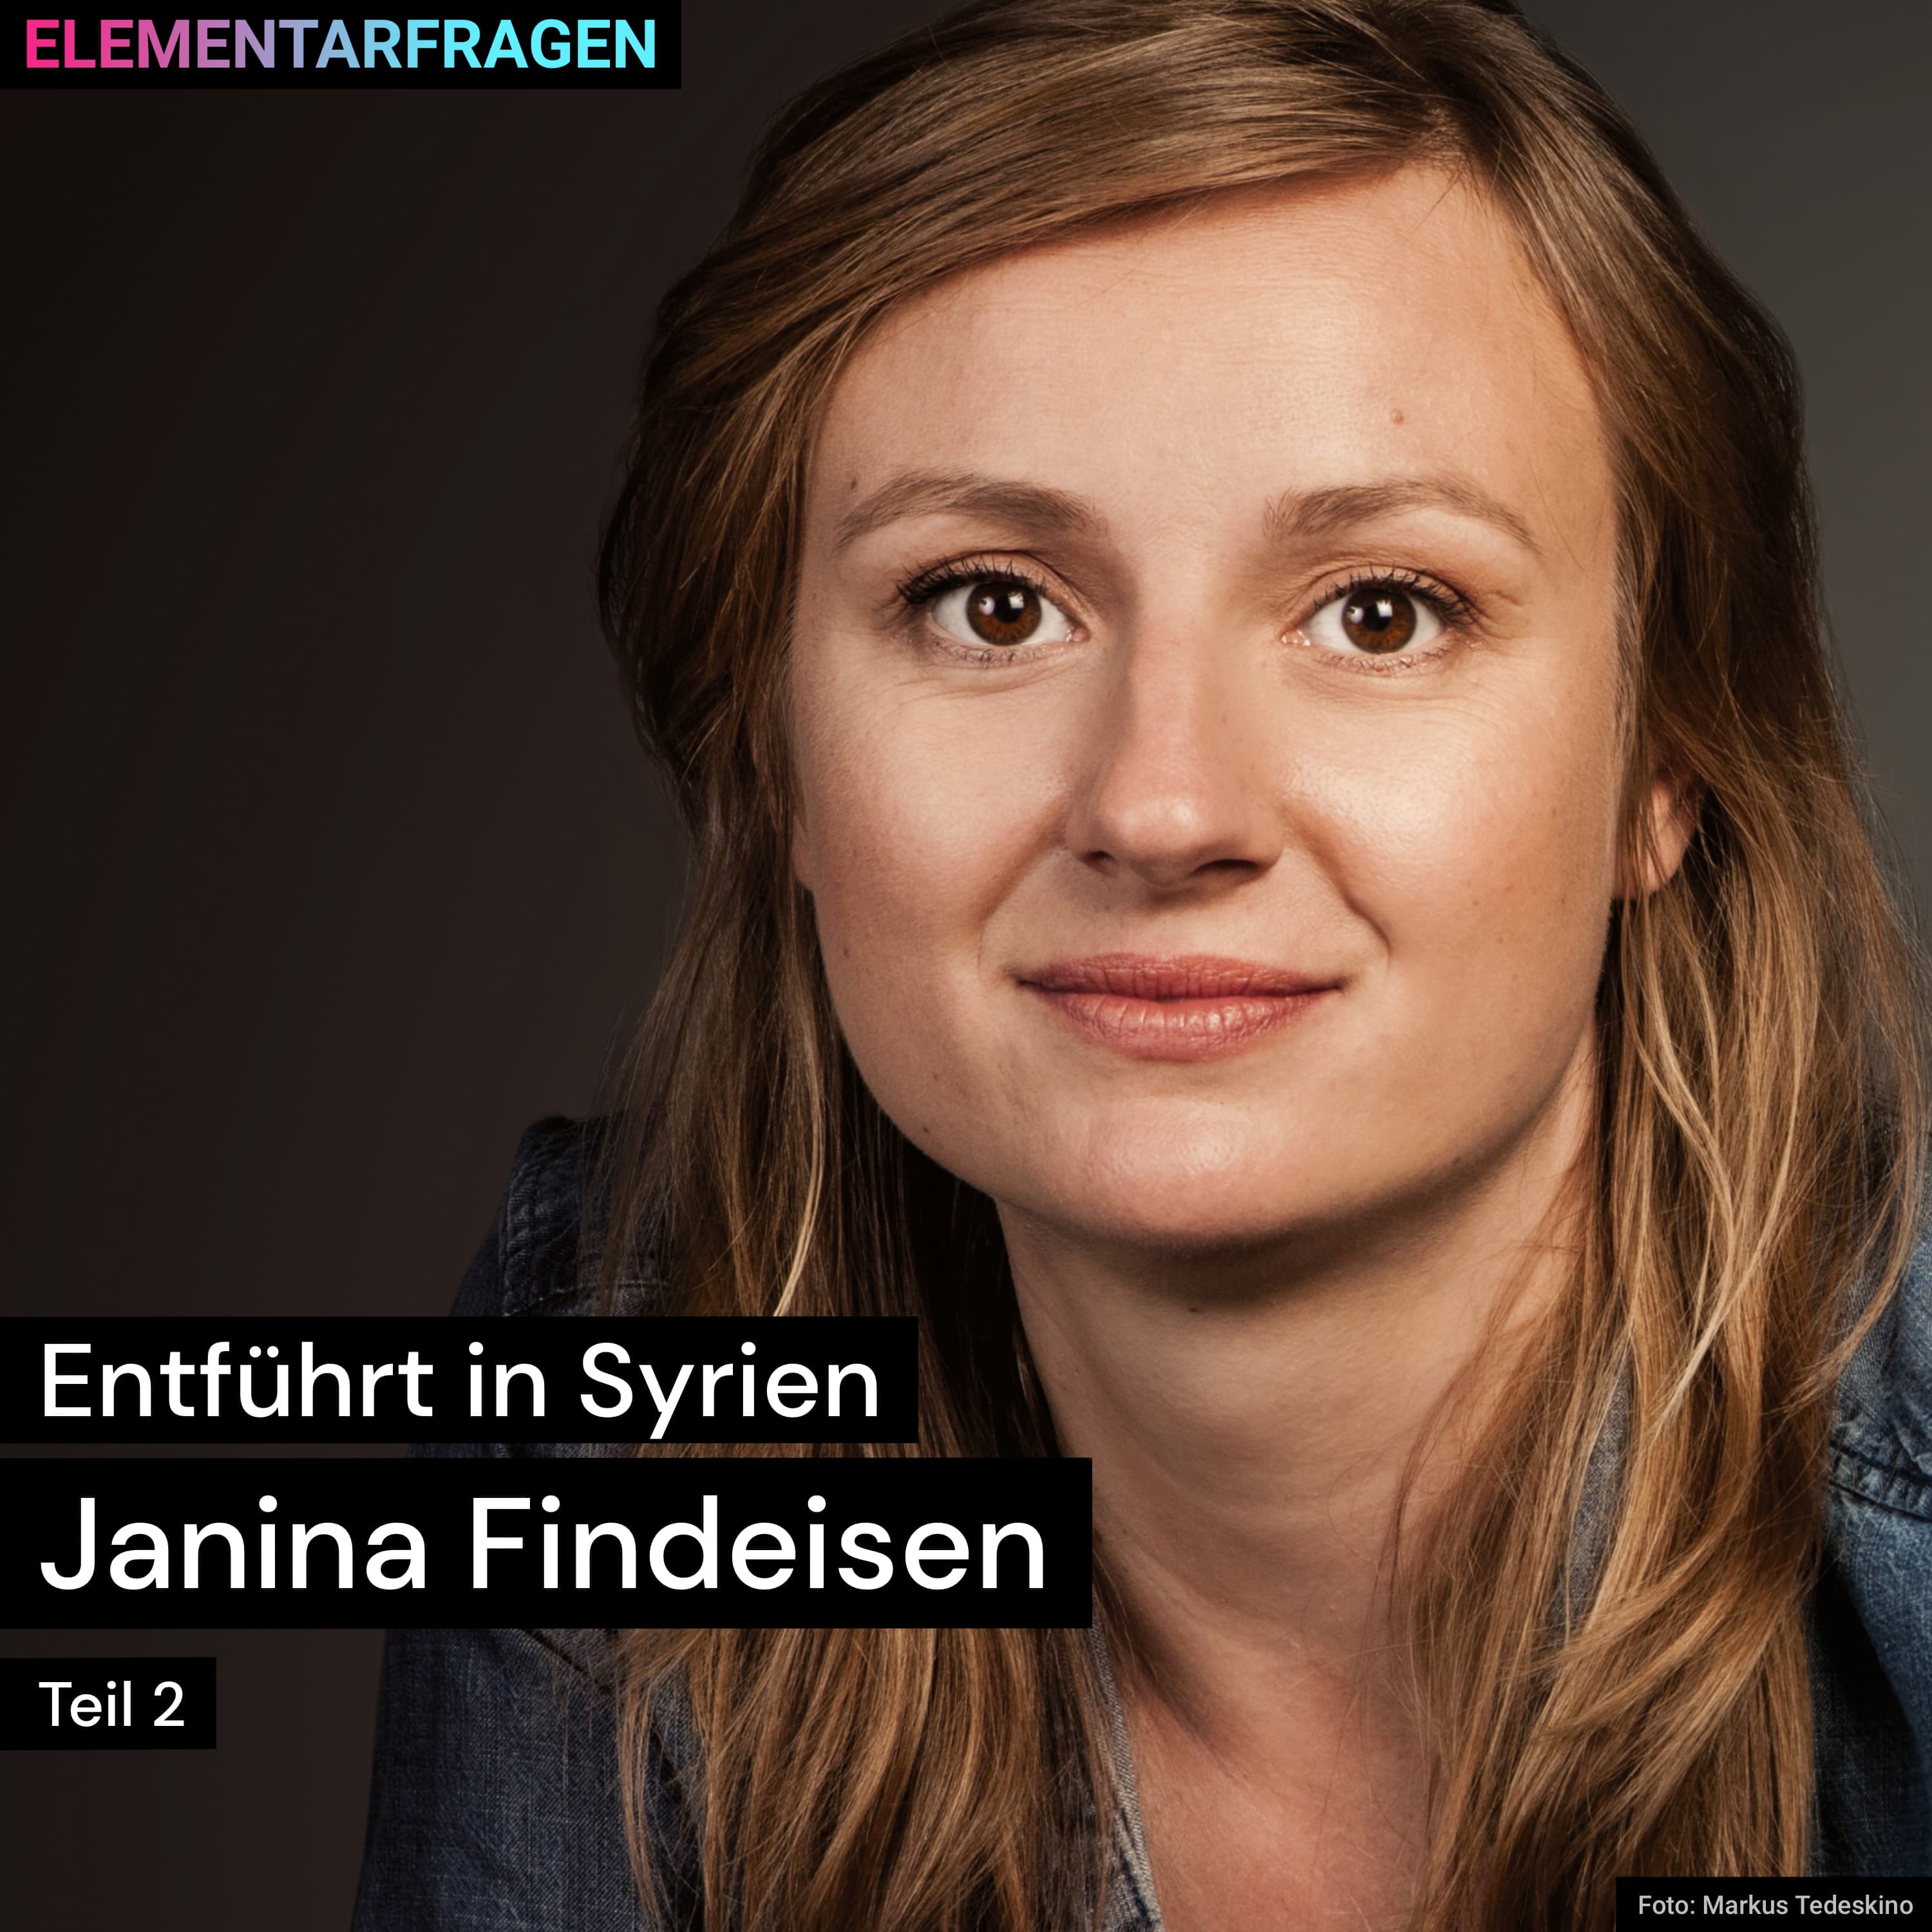 Entführt in Syrien (Teil 2) | Janina Findeisen